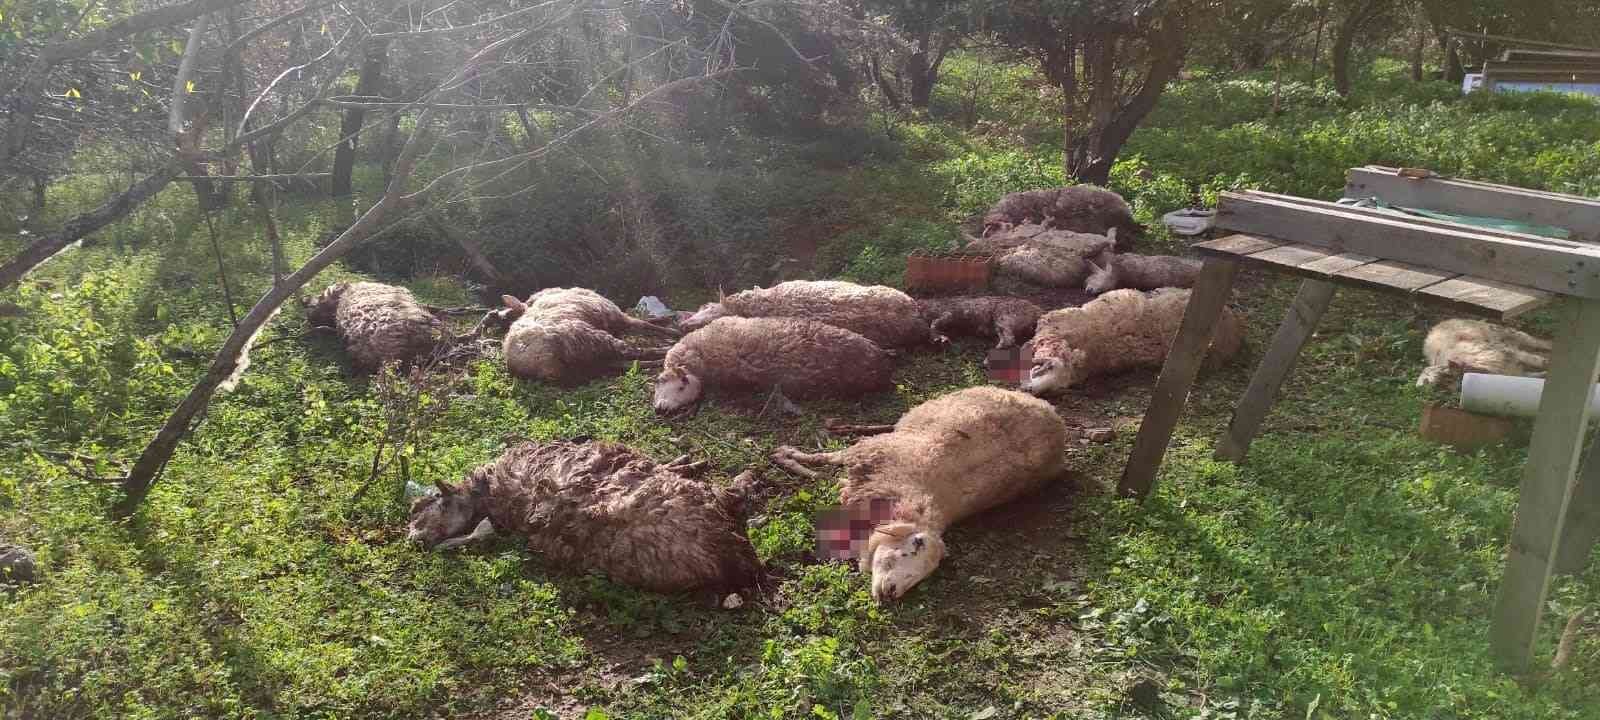 Koyunlarını ölü görünce köpekleri kafalarından vurarak öldürdü #mugla